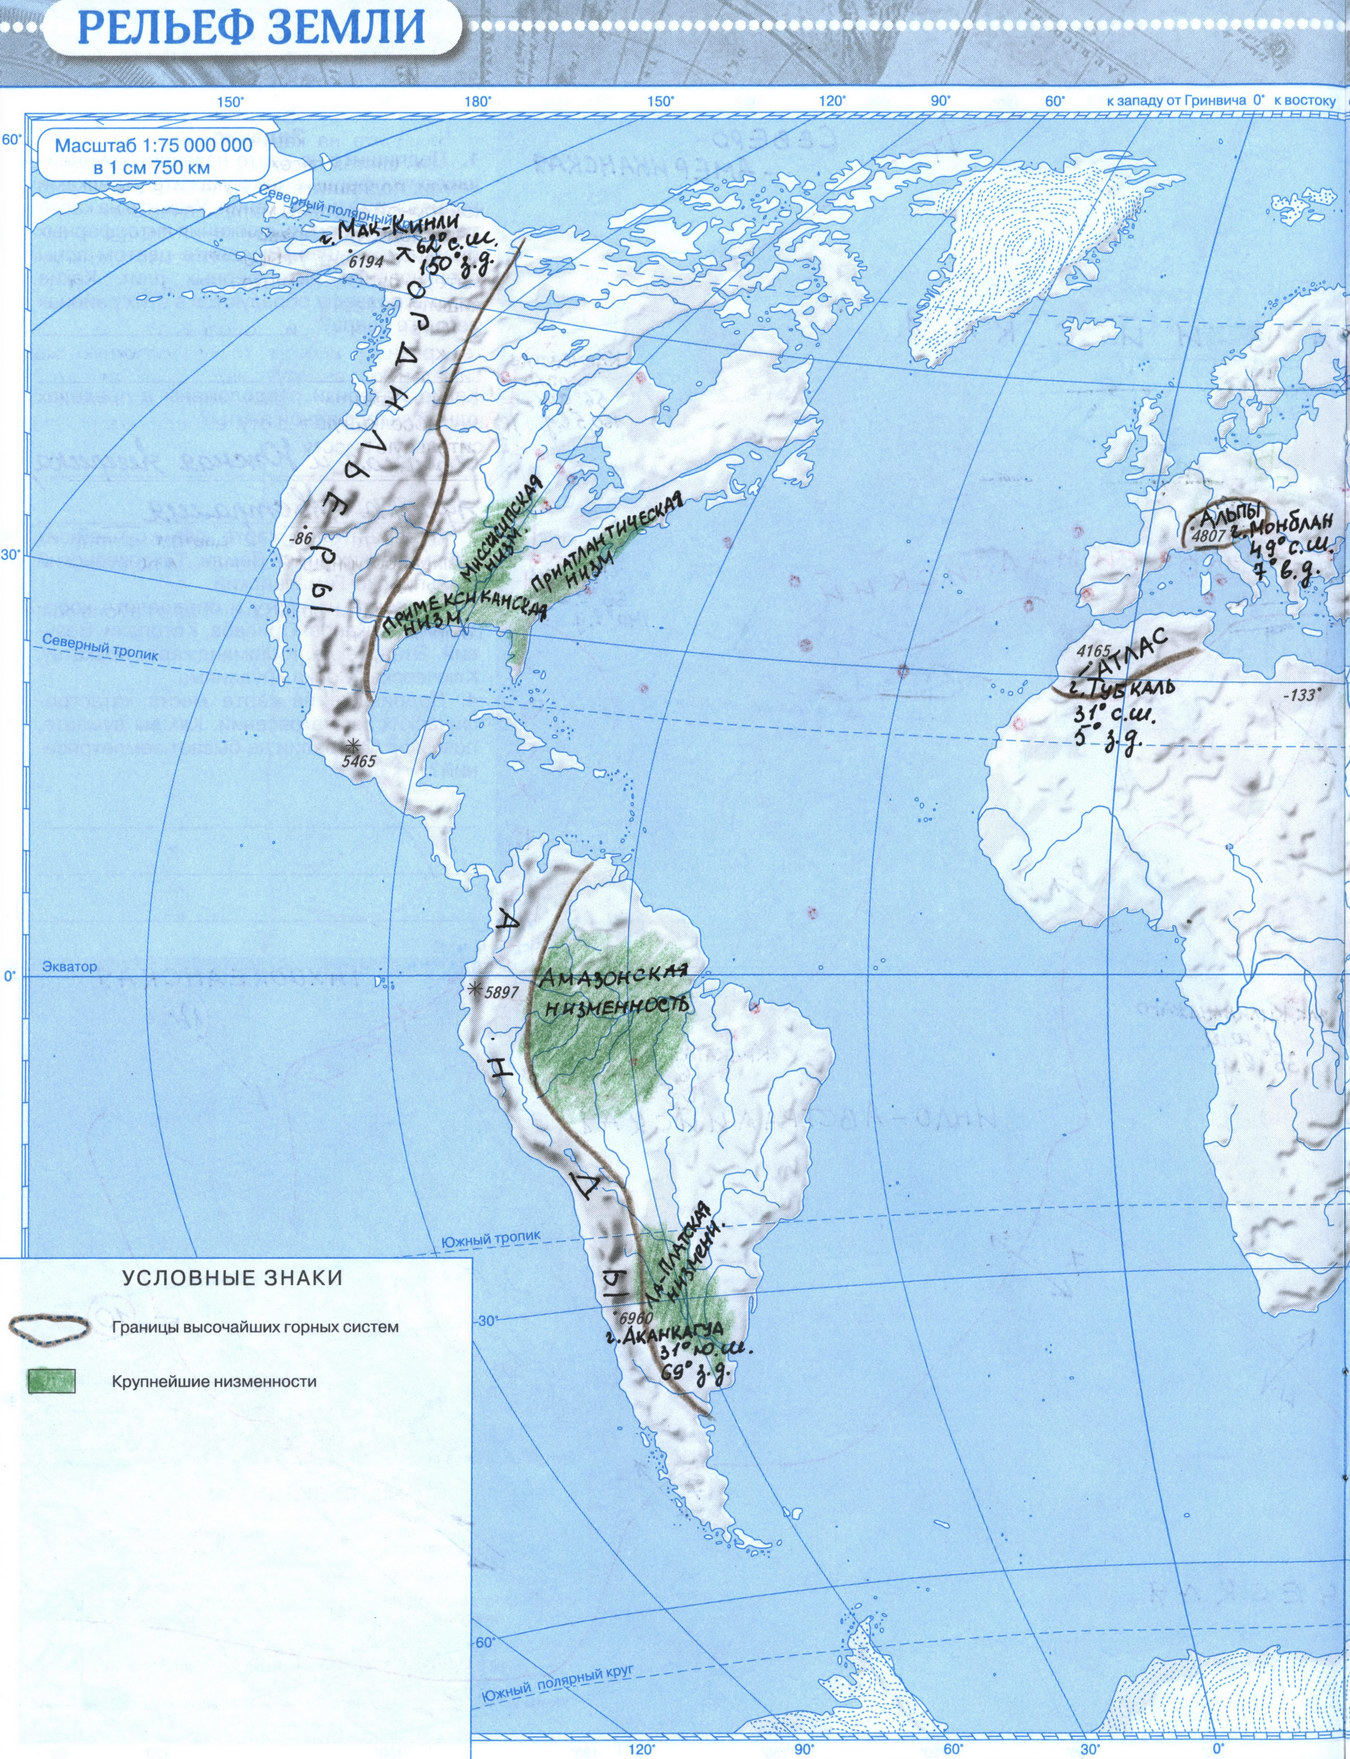 Природные зоны земли биология 5 класс карта